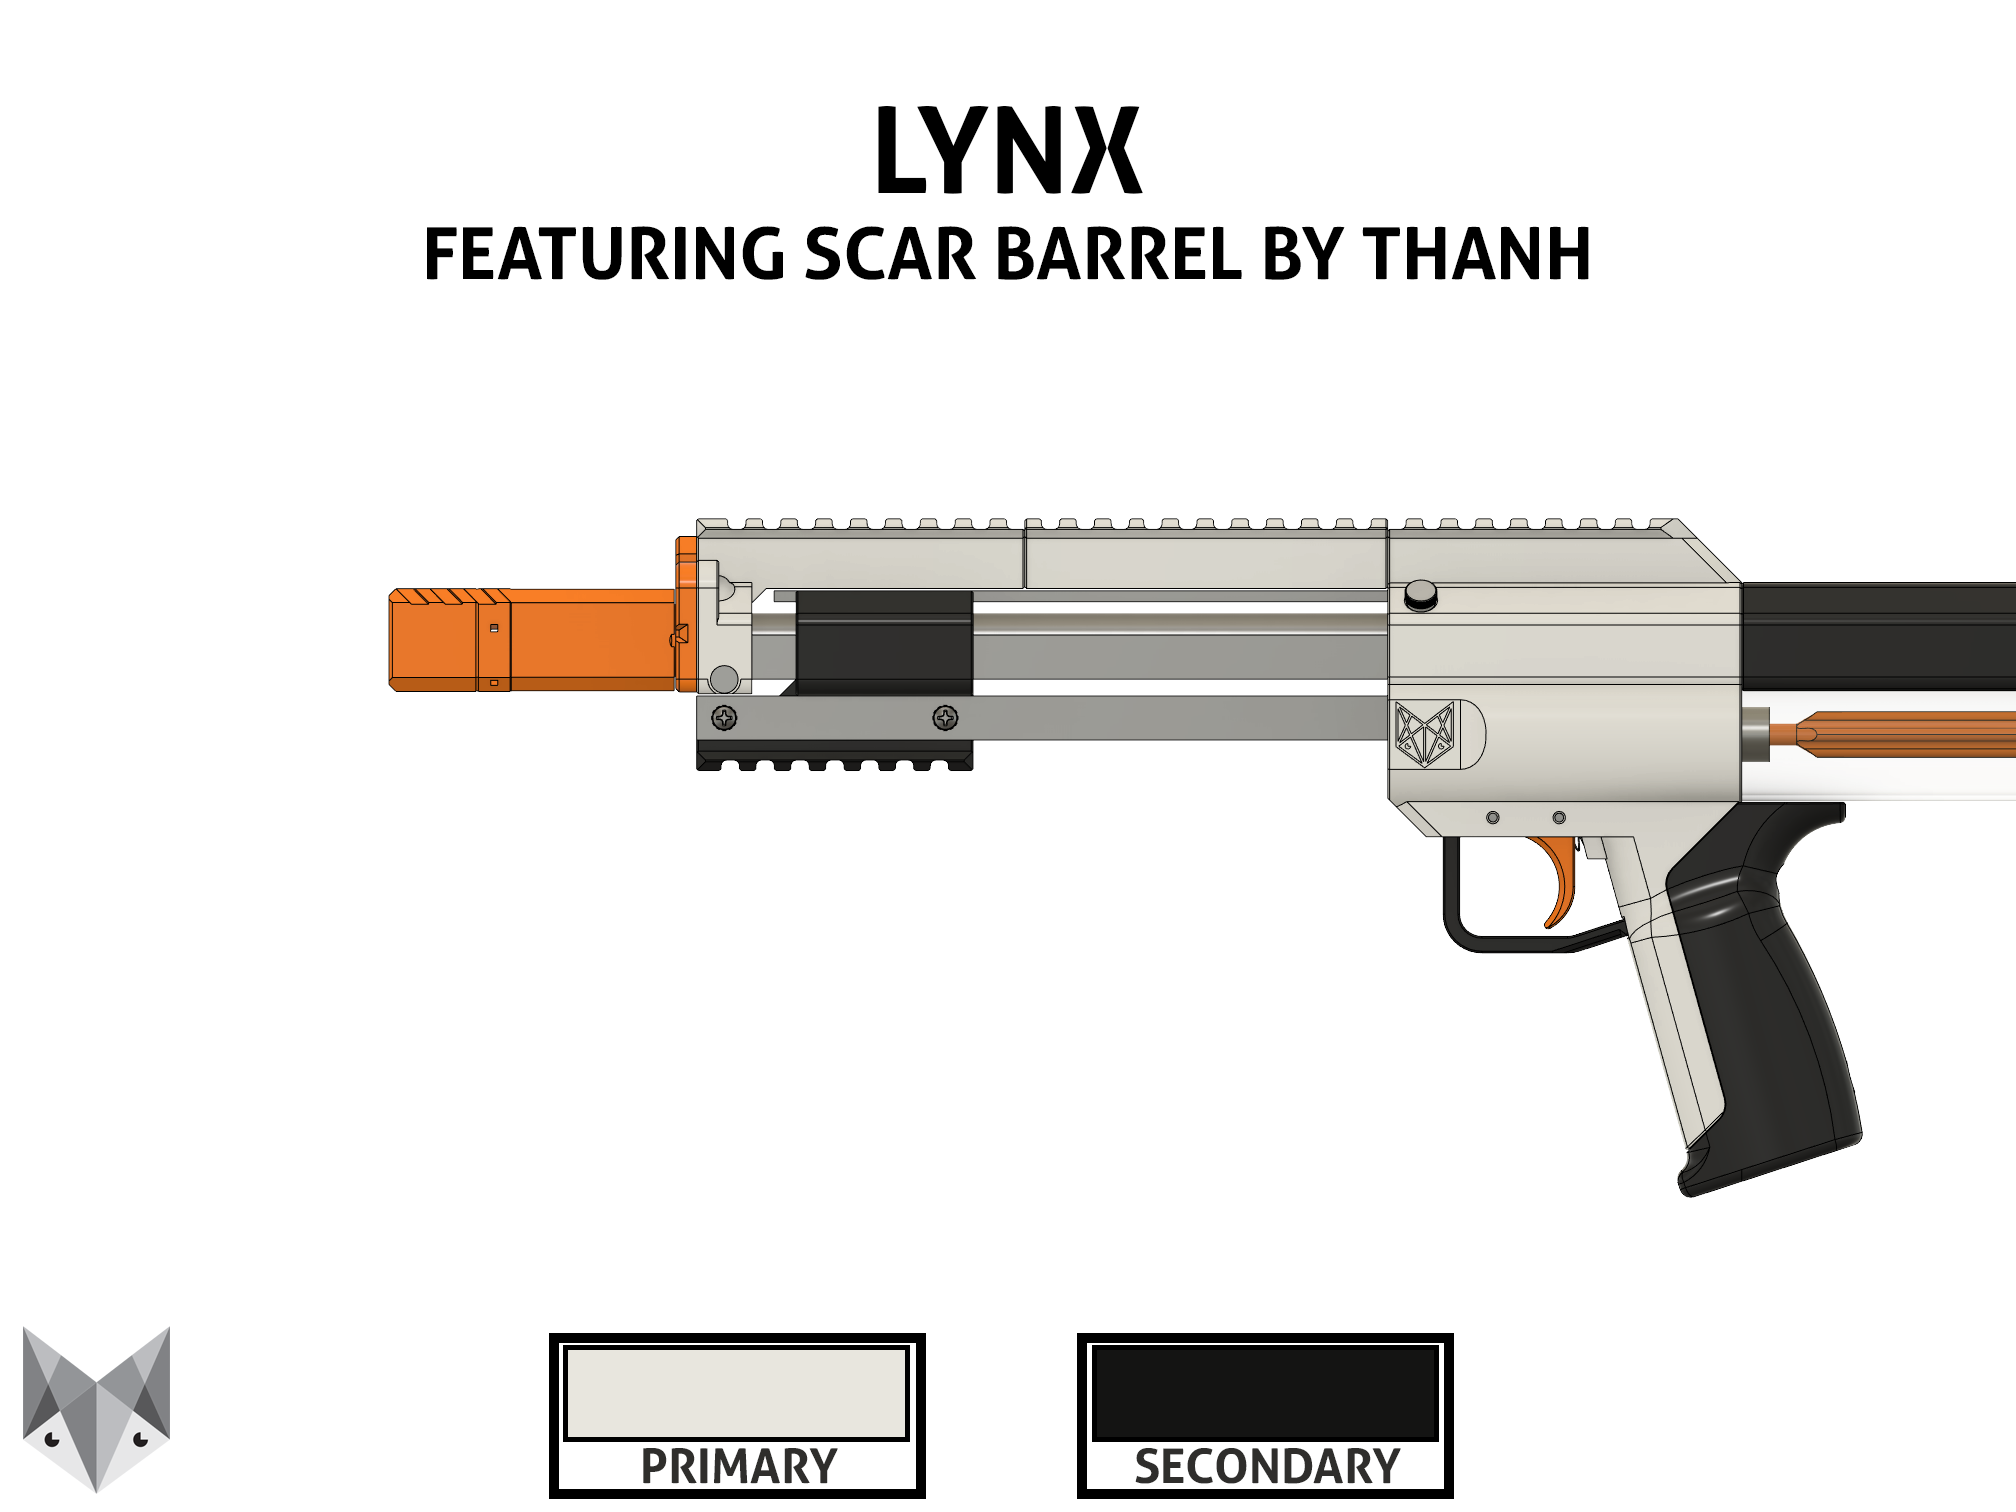 Lynx aim for a Barn burner